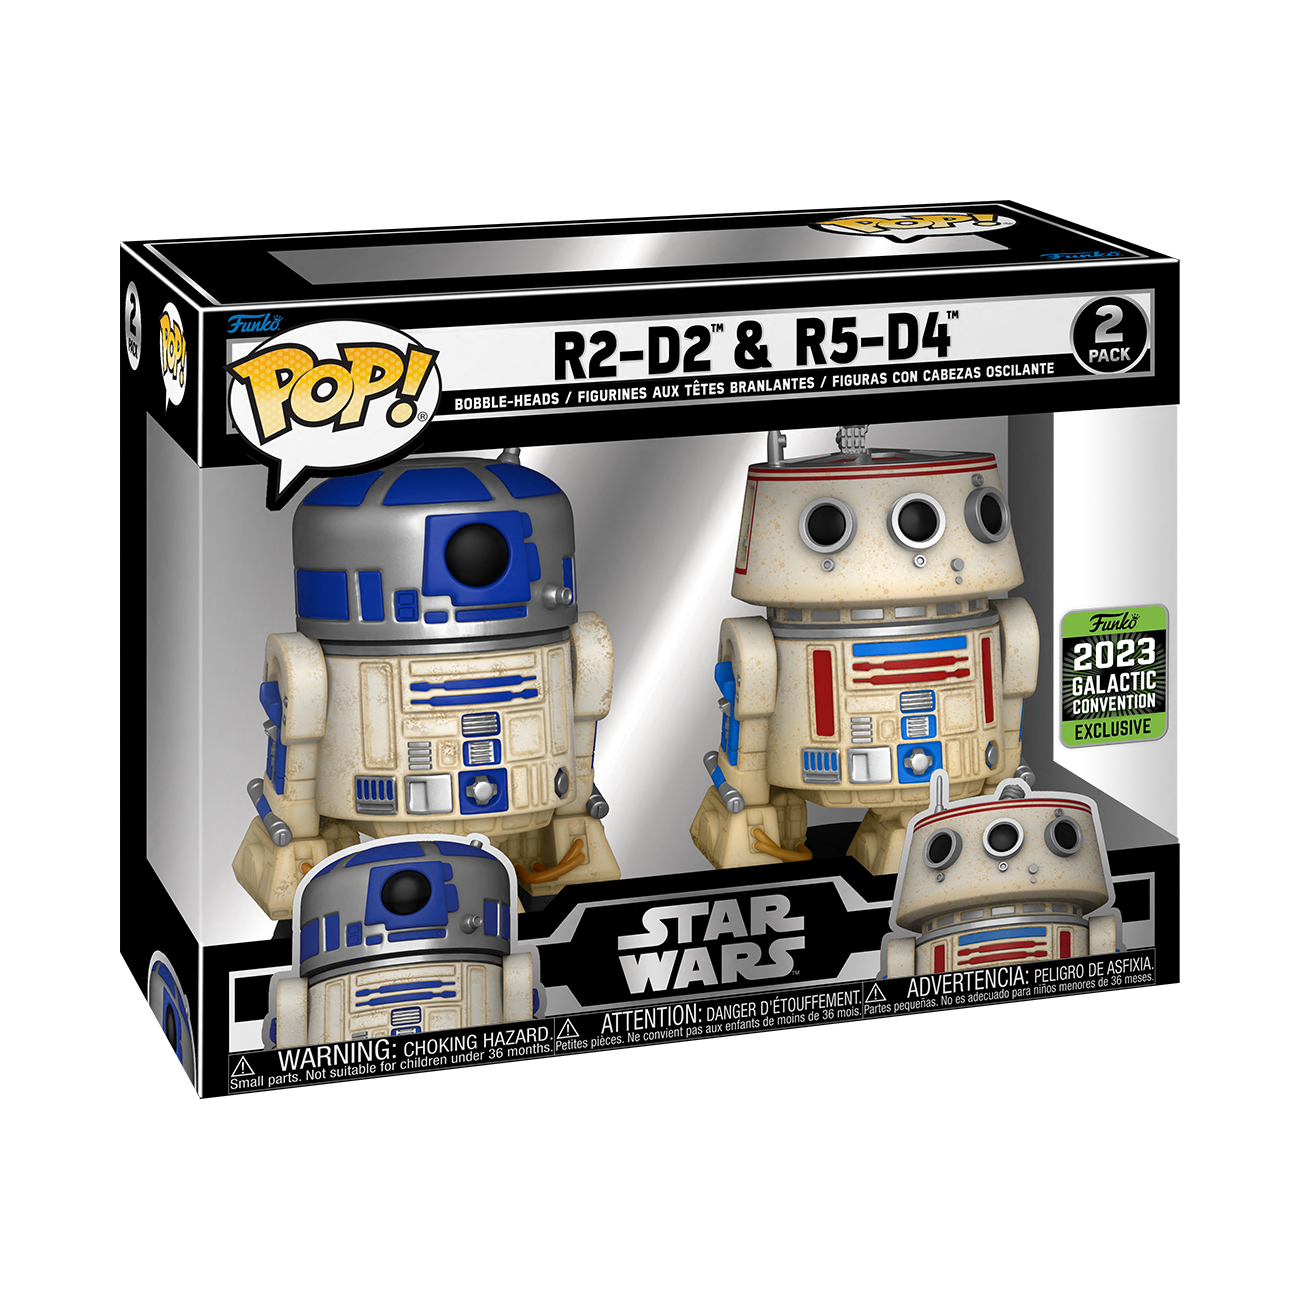 Funko Pop Star Wars - R2-D2 San Valentín – Gettoshopmx